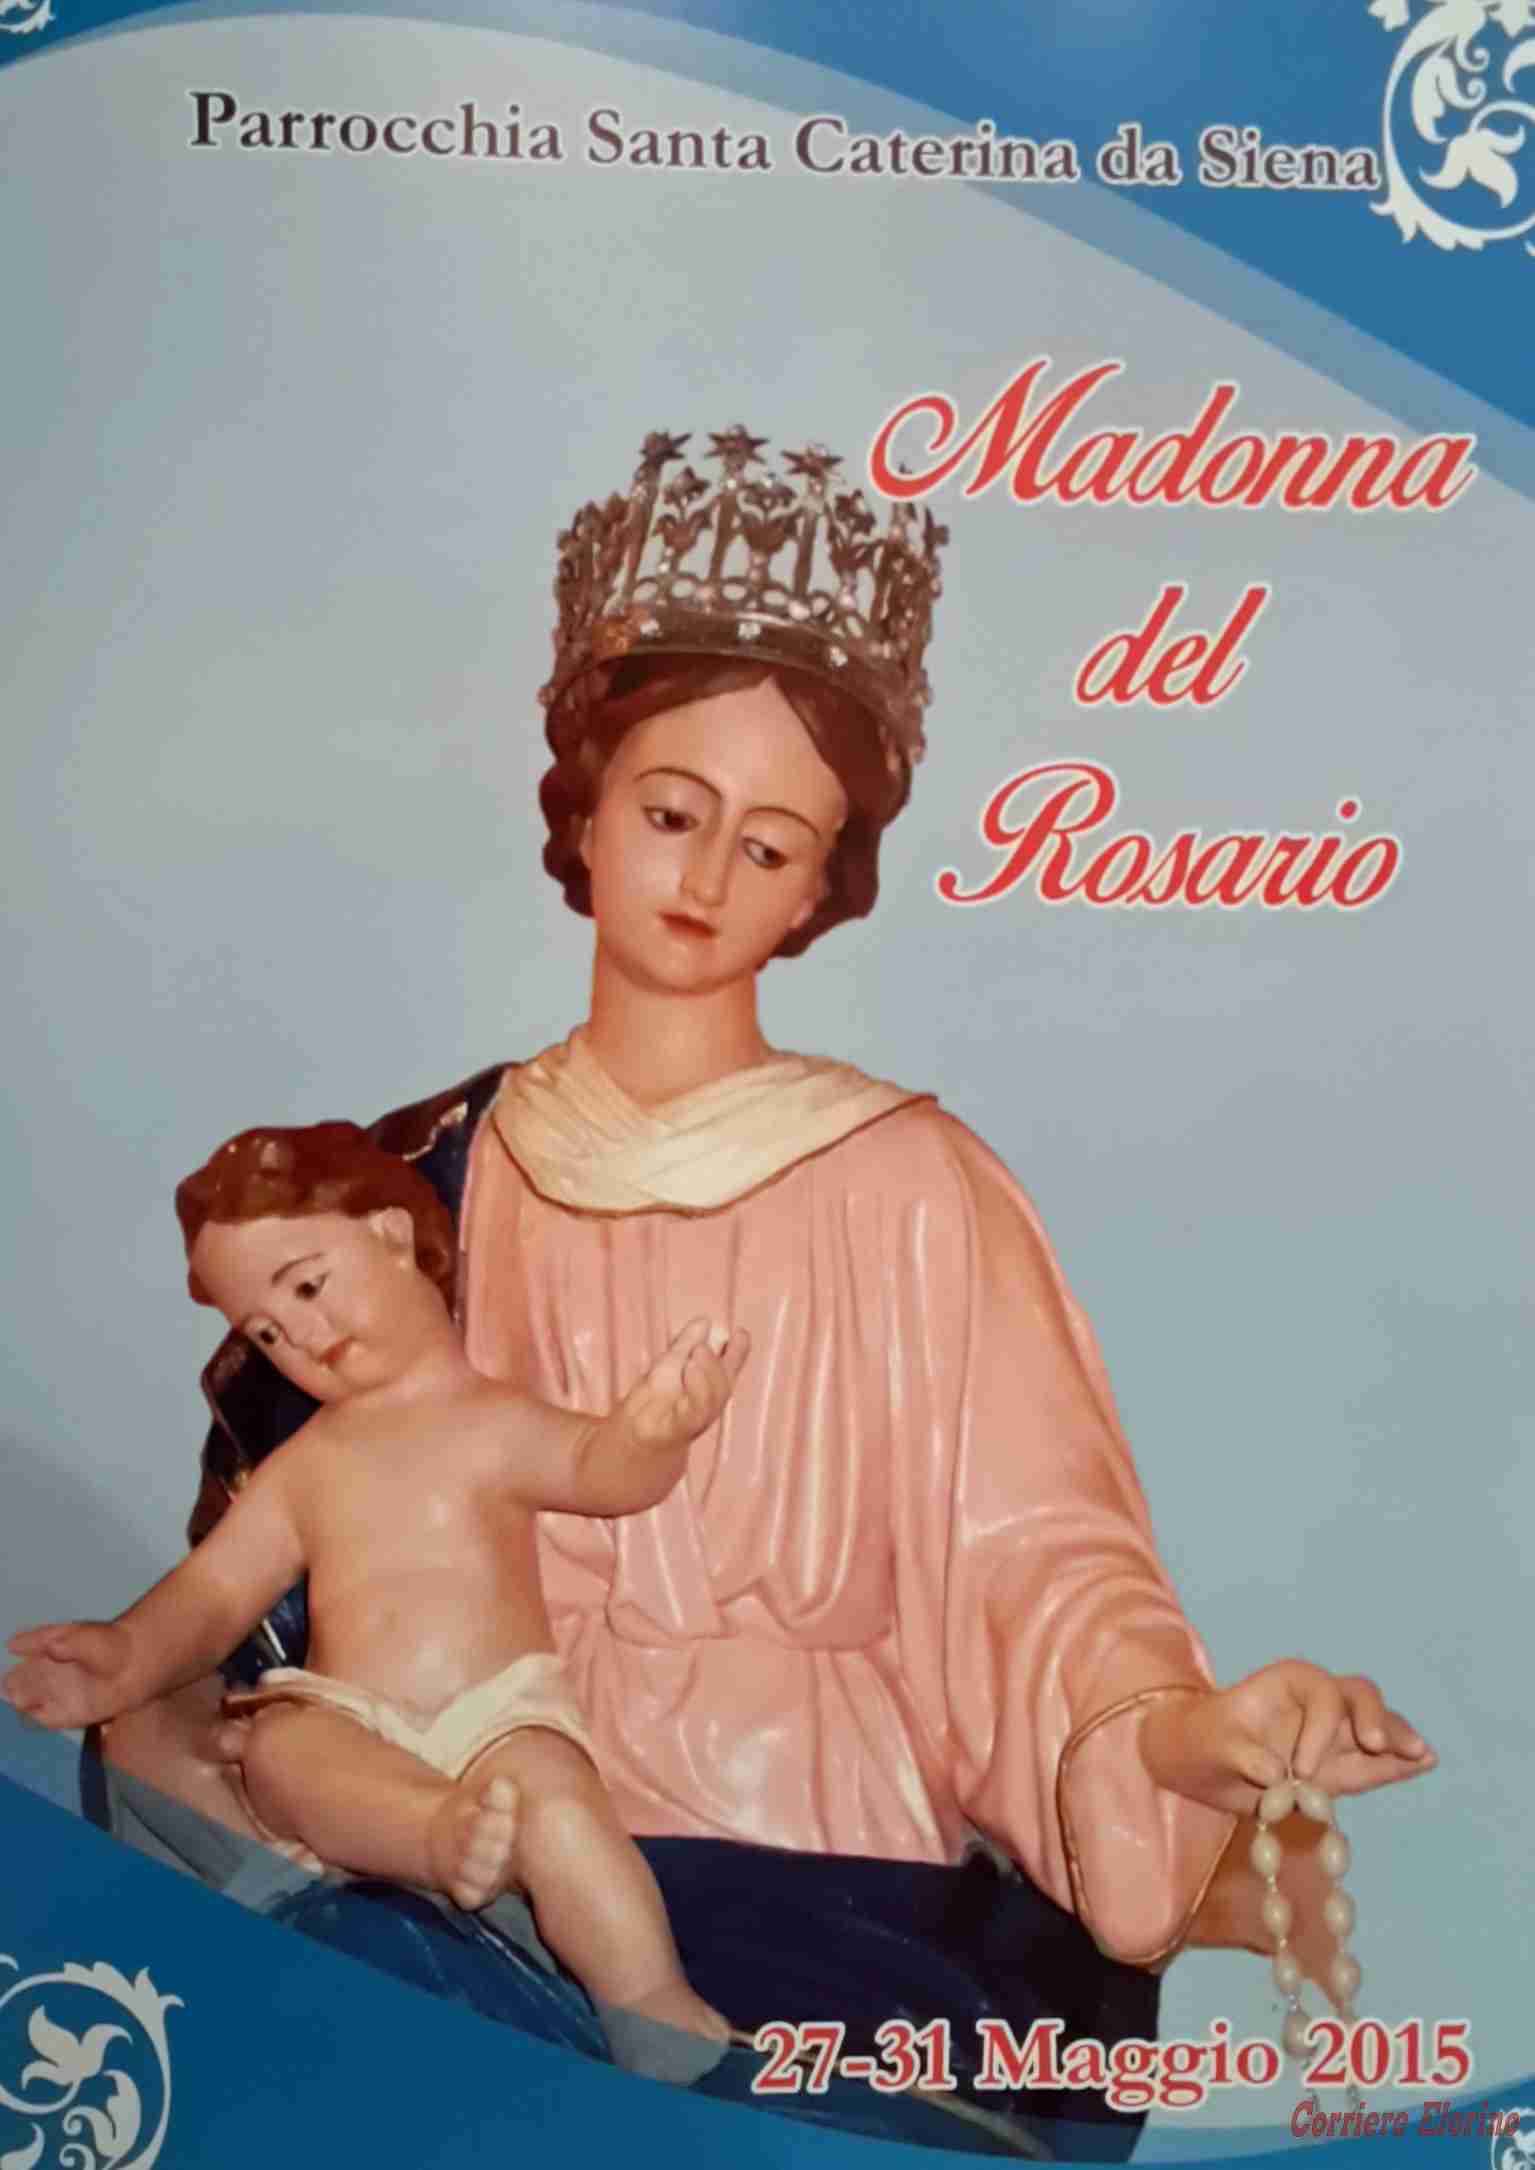 “Madonna del Rosario”. Il programma della festa, dal 27 al 31 maggio